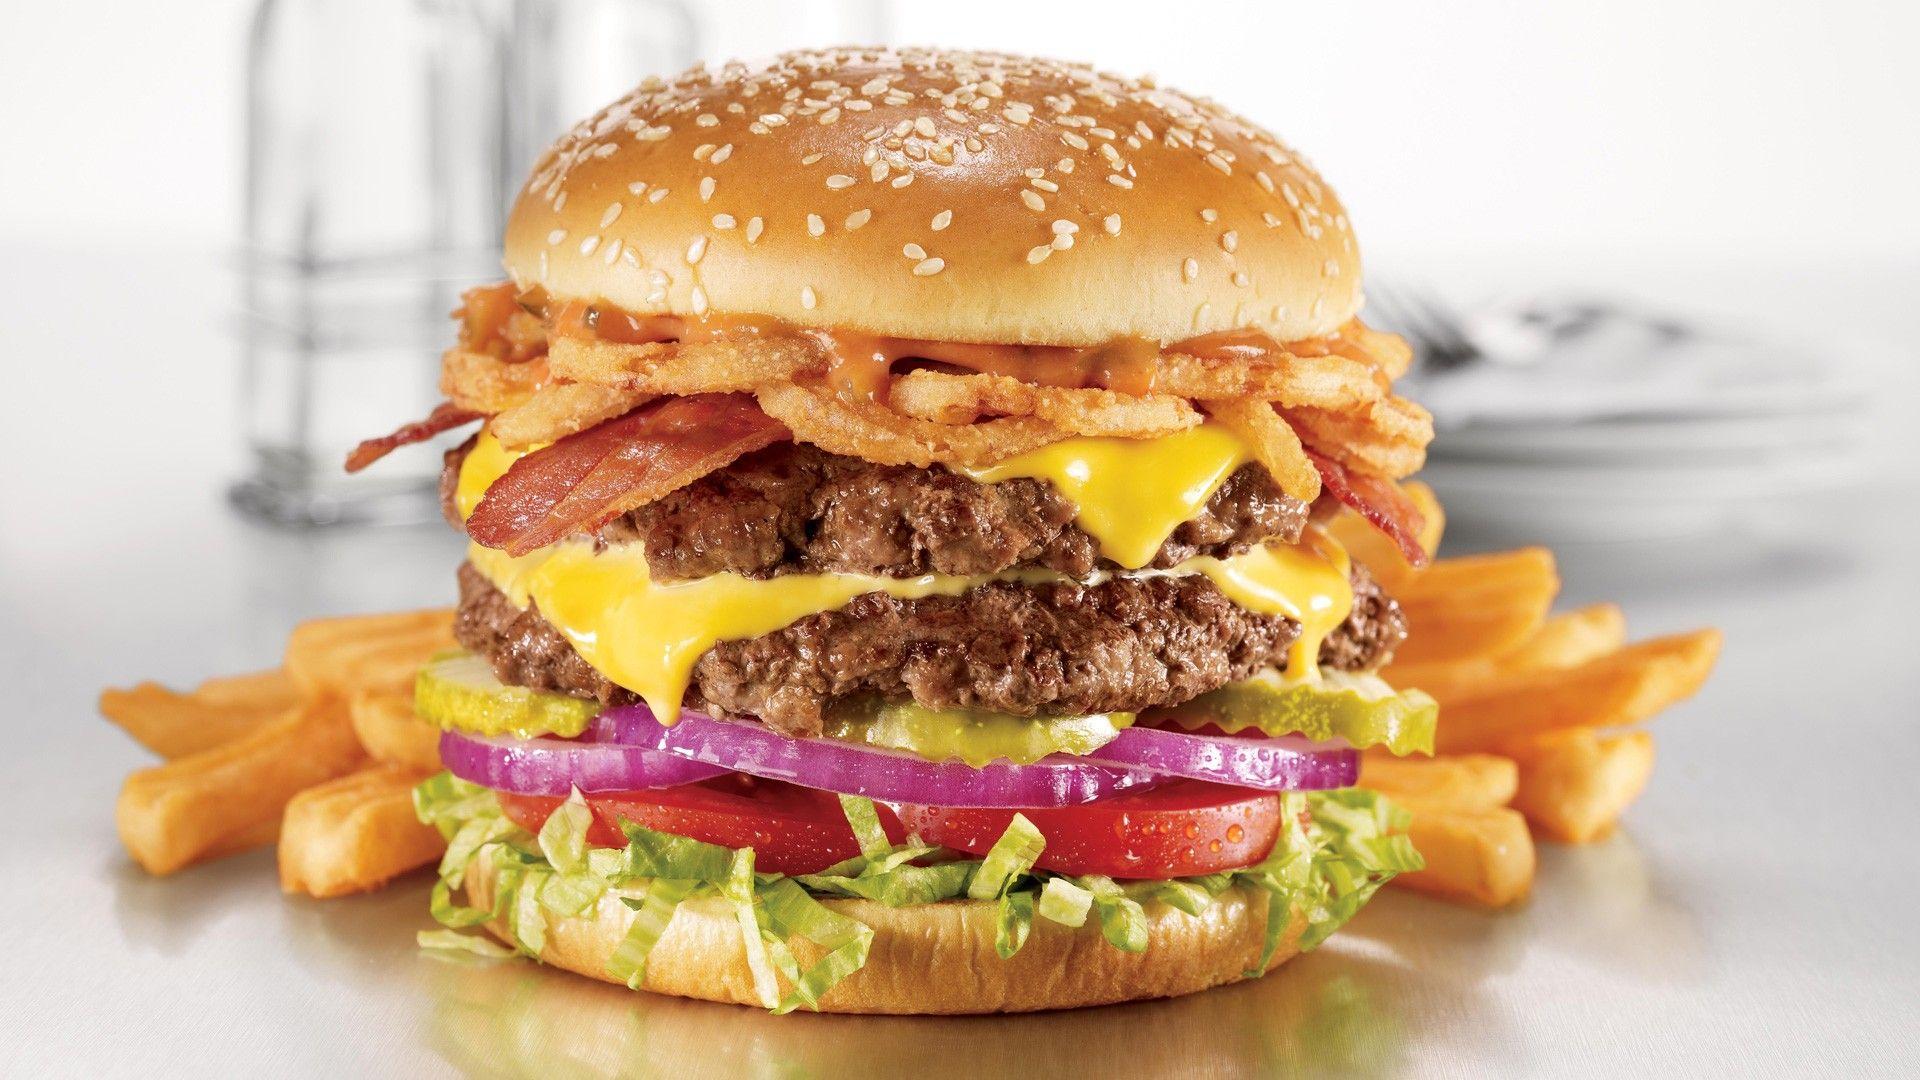 Cheeseburger Burger french fry fries wallpaperx1080